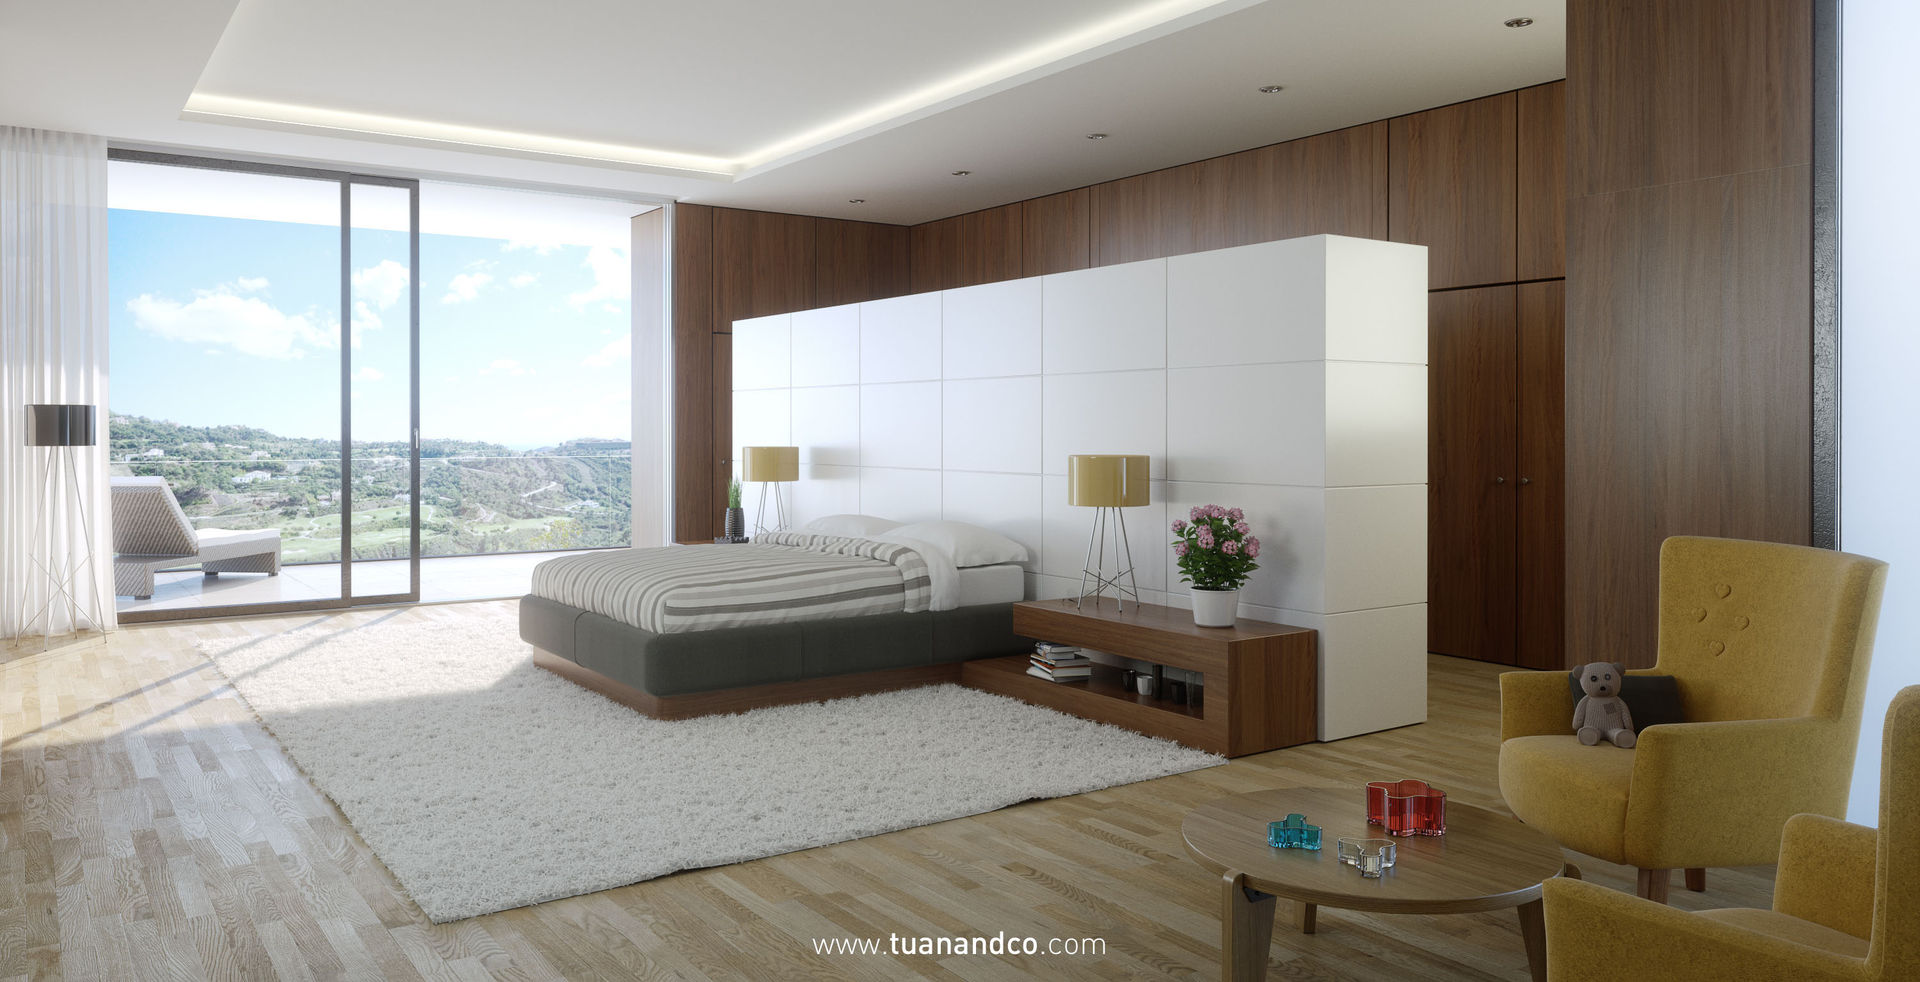 Villa bioclimática en la Zagaleta., TUAN&CO. arquitectura TUAN&CO. arquitectura Modern Bedroom Wood Wood effect